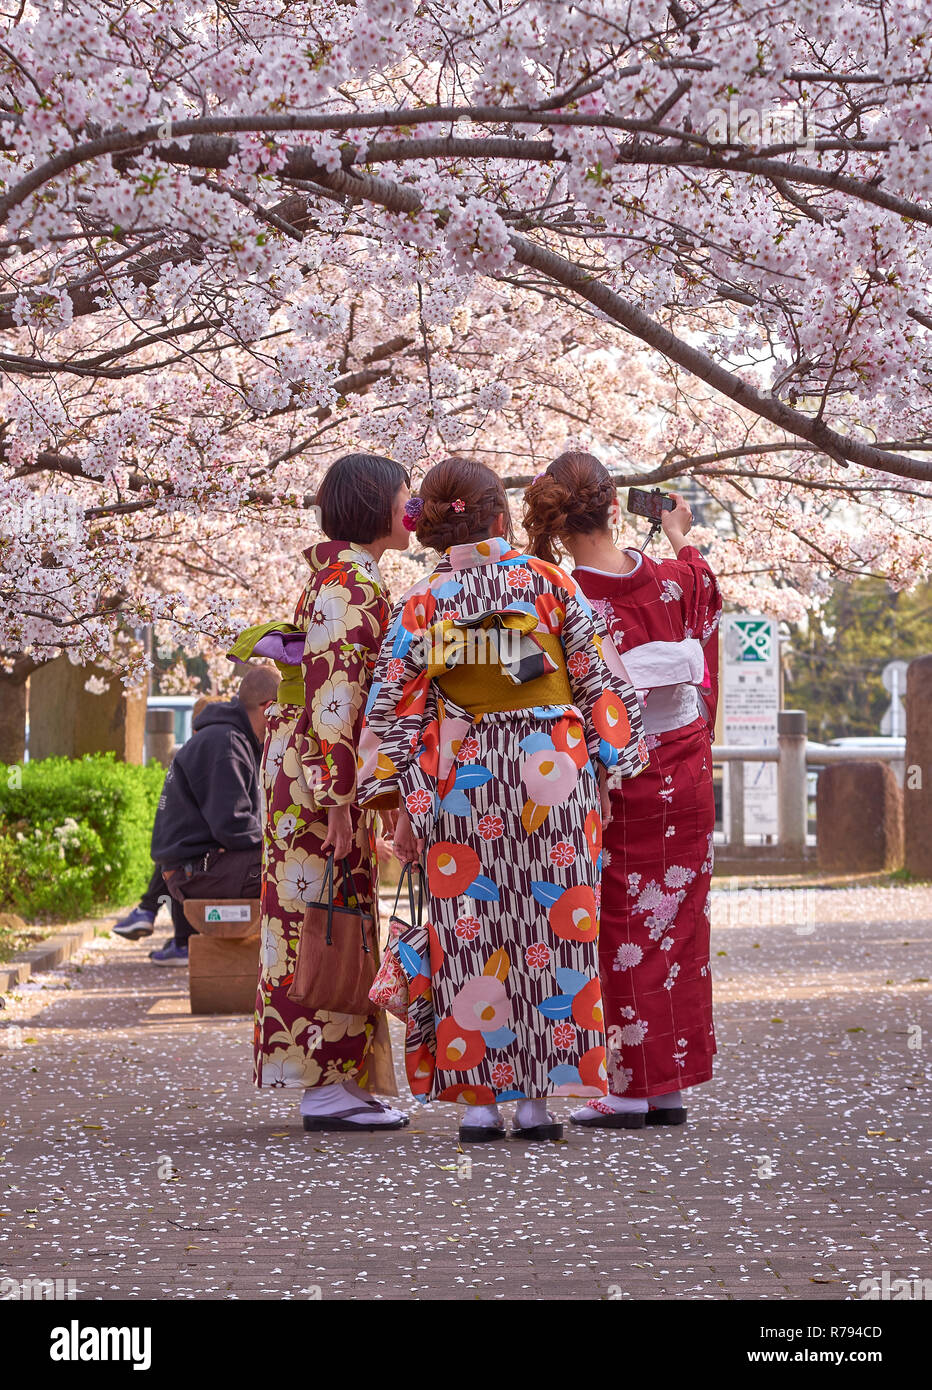 Die drei japanischen Damen aus gesehen hinter dress up in einem Blumenmotiv Kimonos posieren für ein selfie unter einem blühenden Kirschbaum Stockfoto